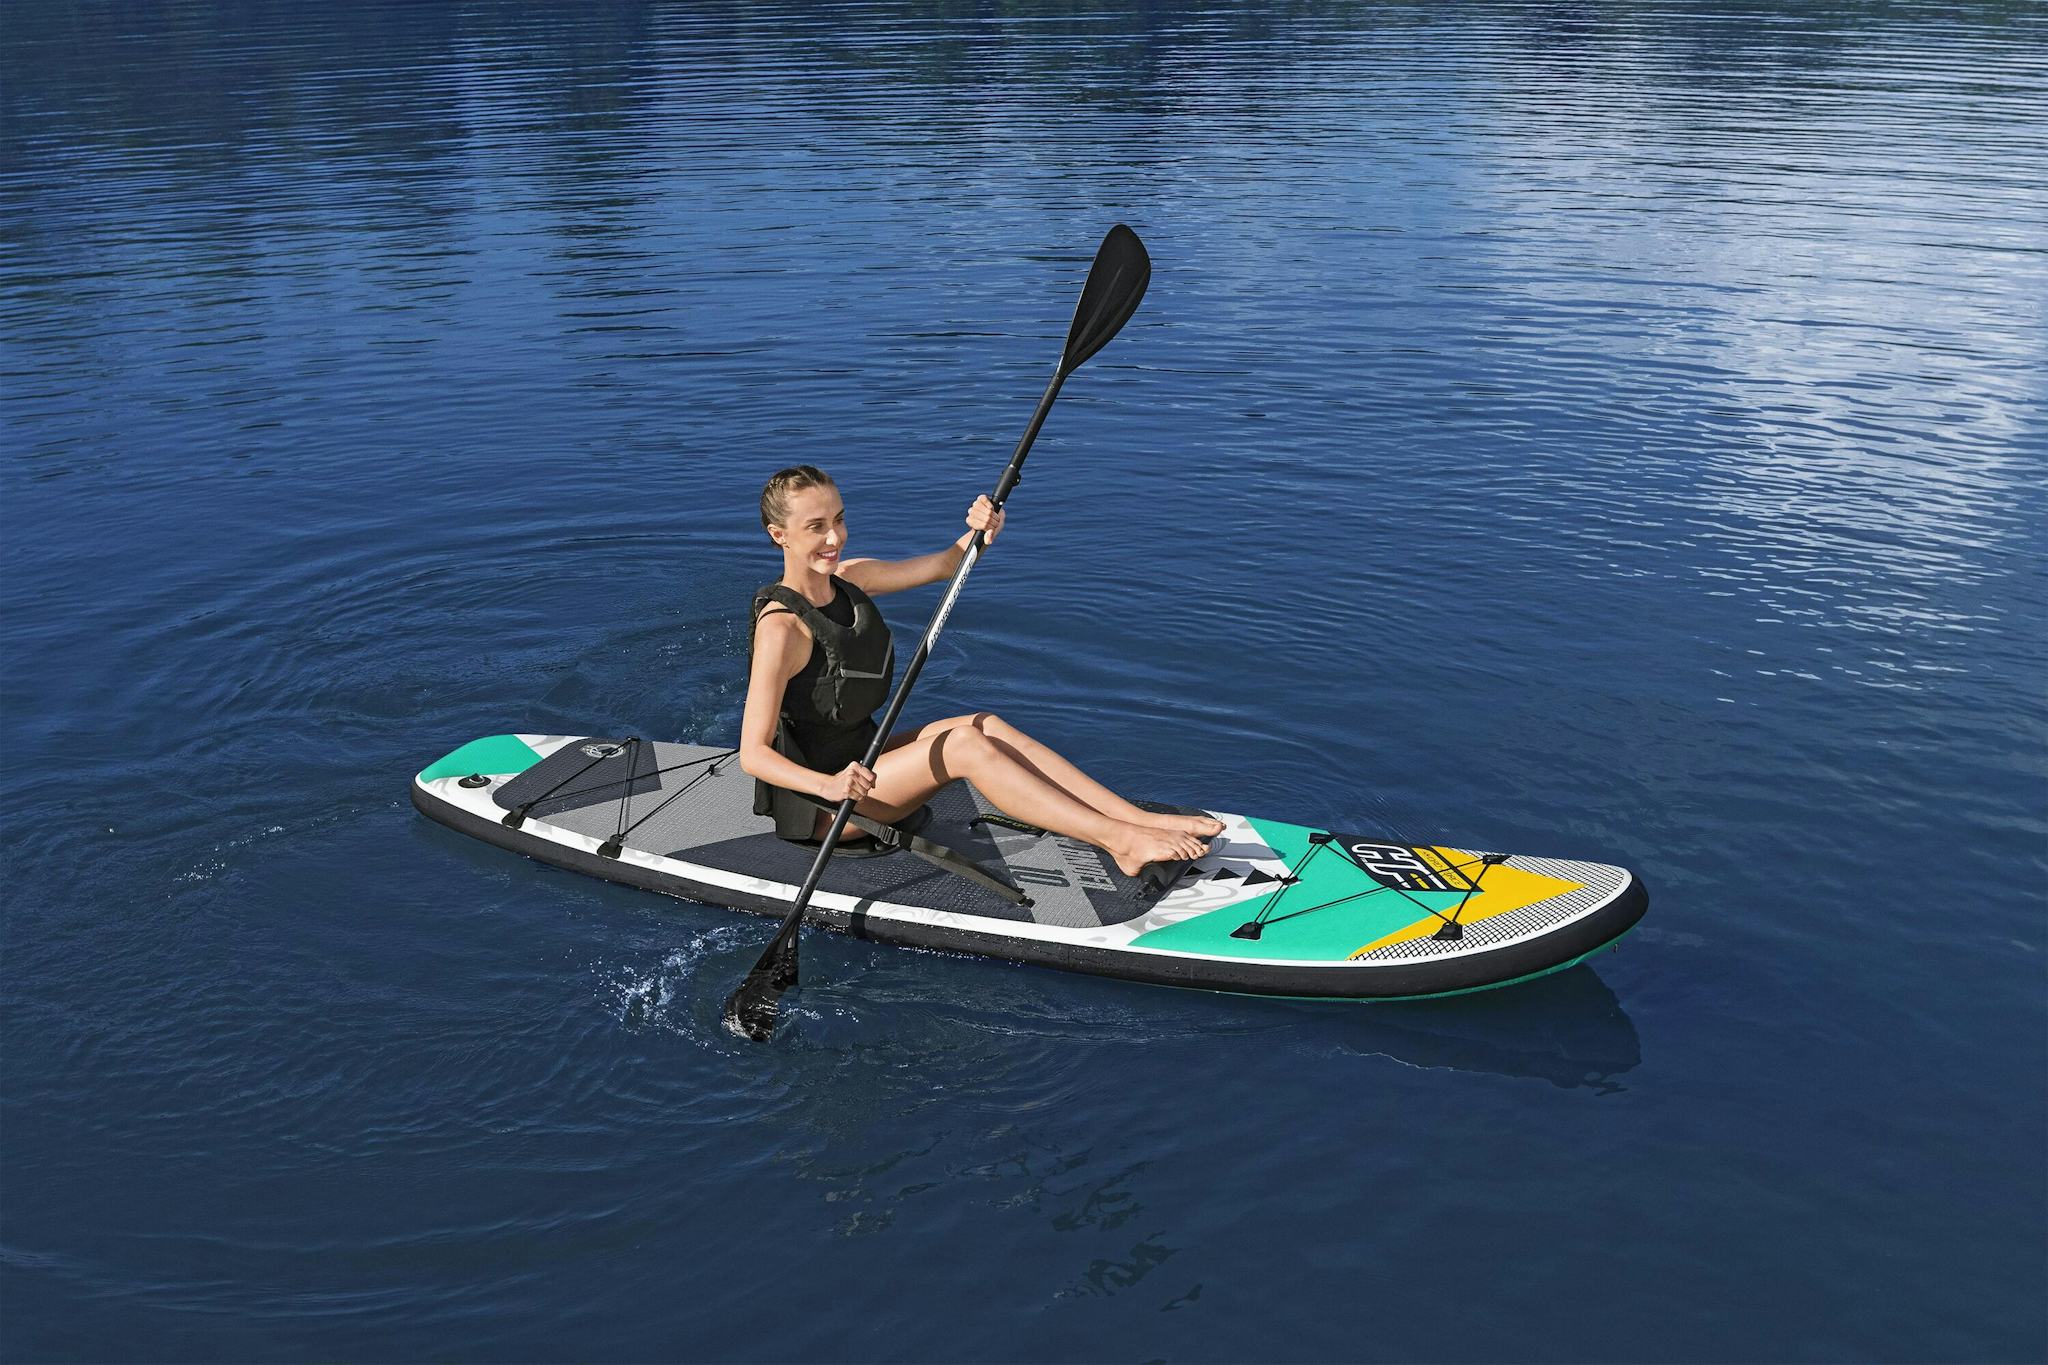 Sports d'eau Paddle SUP gonflable Hydro-Force™ Aqua Wander, 305 x 84 x 12 cm avec pagaie, leash, pompe, 2 ailerons et sac à dos de transport, siège détachable Bestway 6